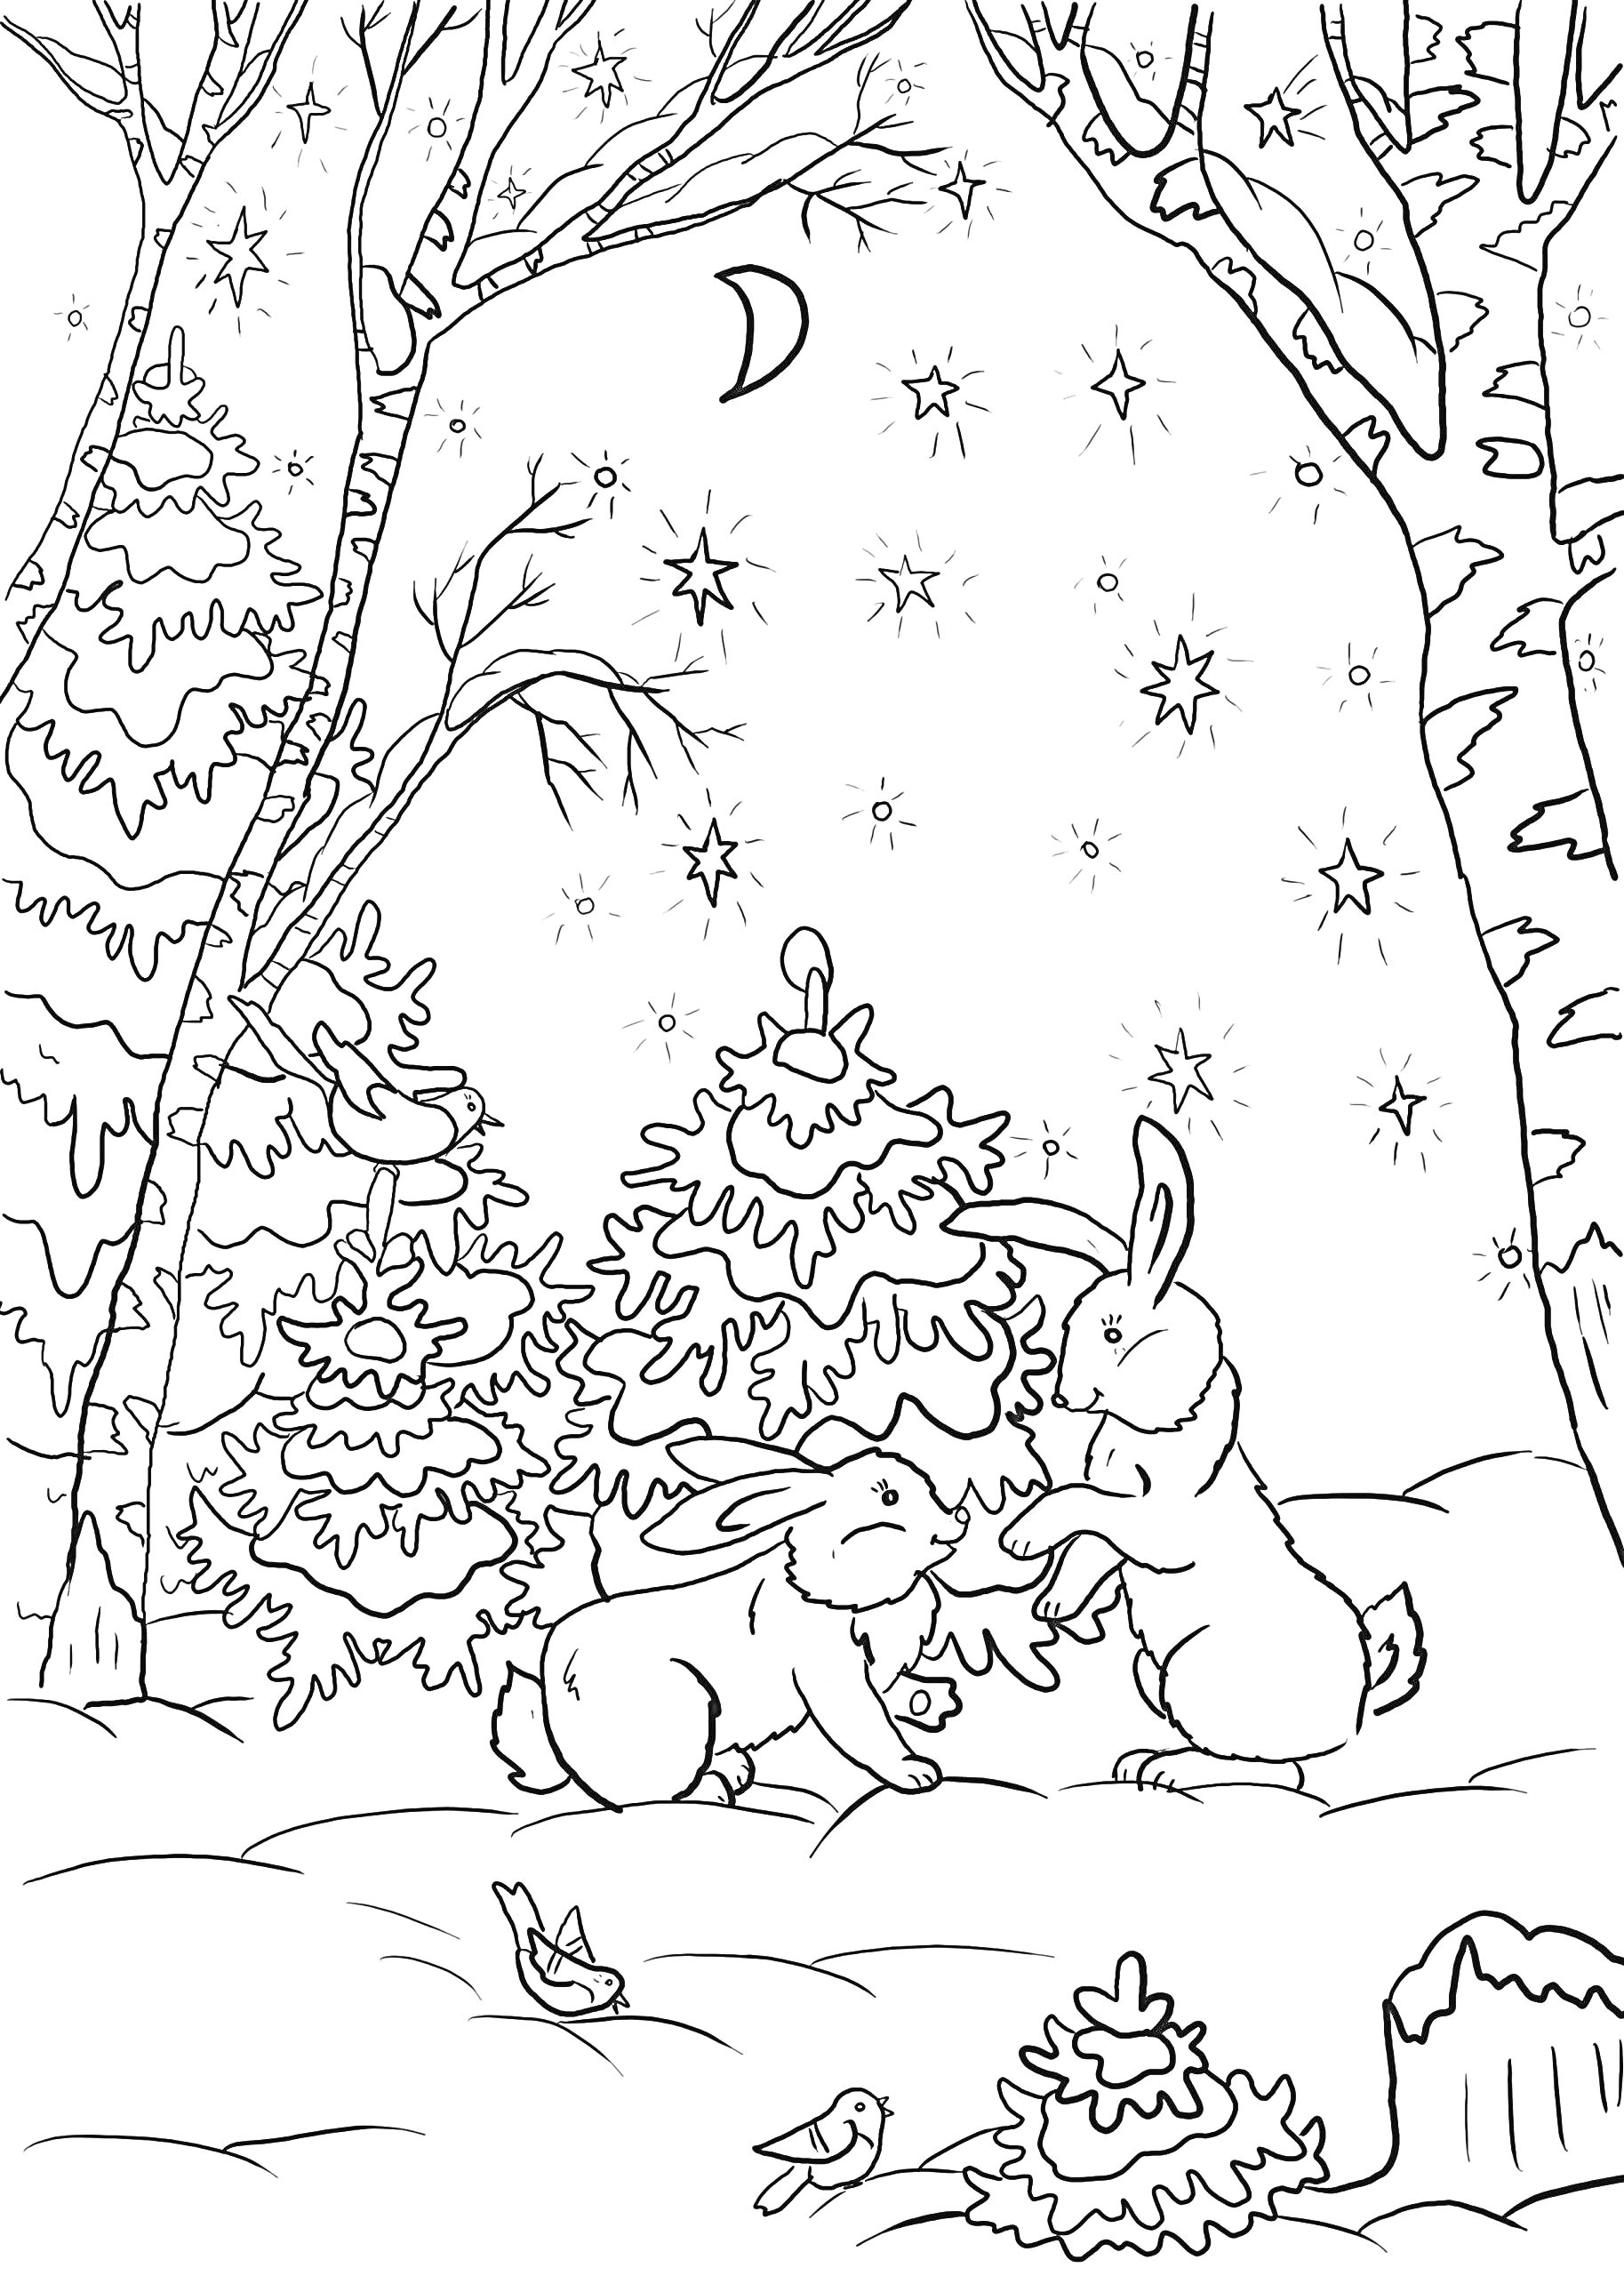 Два зайца в зимнем лесу с ёлками, звёздами, месяцем и пнями, рядом с птицами